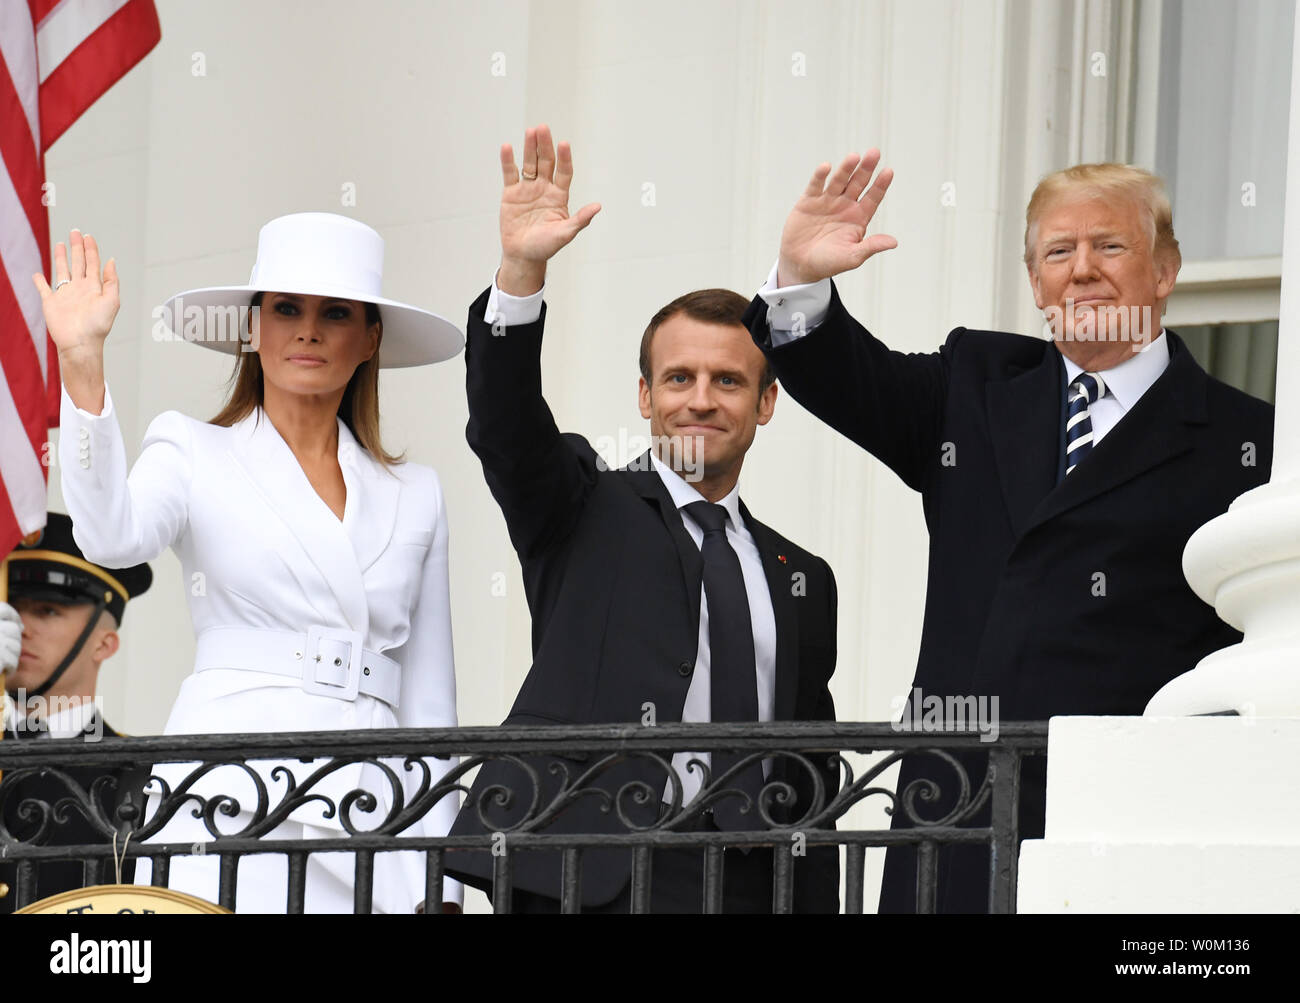 Le Président américain Donald Trump, première dame Melania Trump, président français Emmanuel Macron et Brigitte Macron vague du balcon lors de cérémonie d'accueil pour la visite d'État à la Maison Blanche le Mardi, Avril 24, 2018. Photo de Pat Benic/UPI Banque D'Images